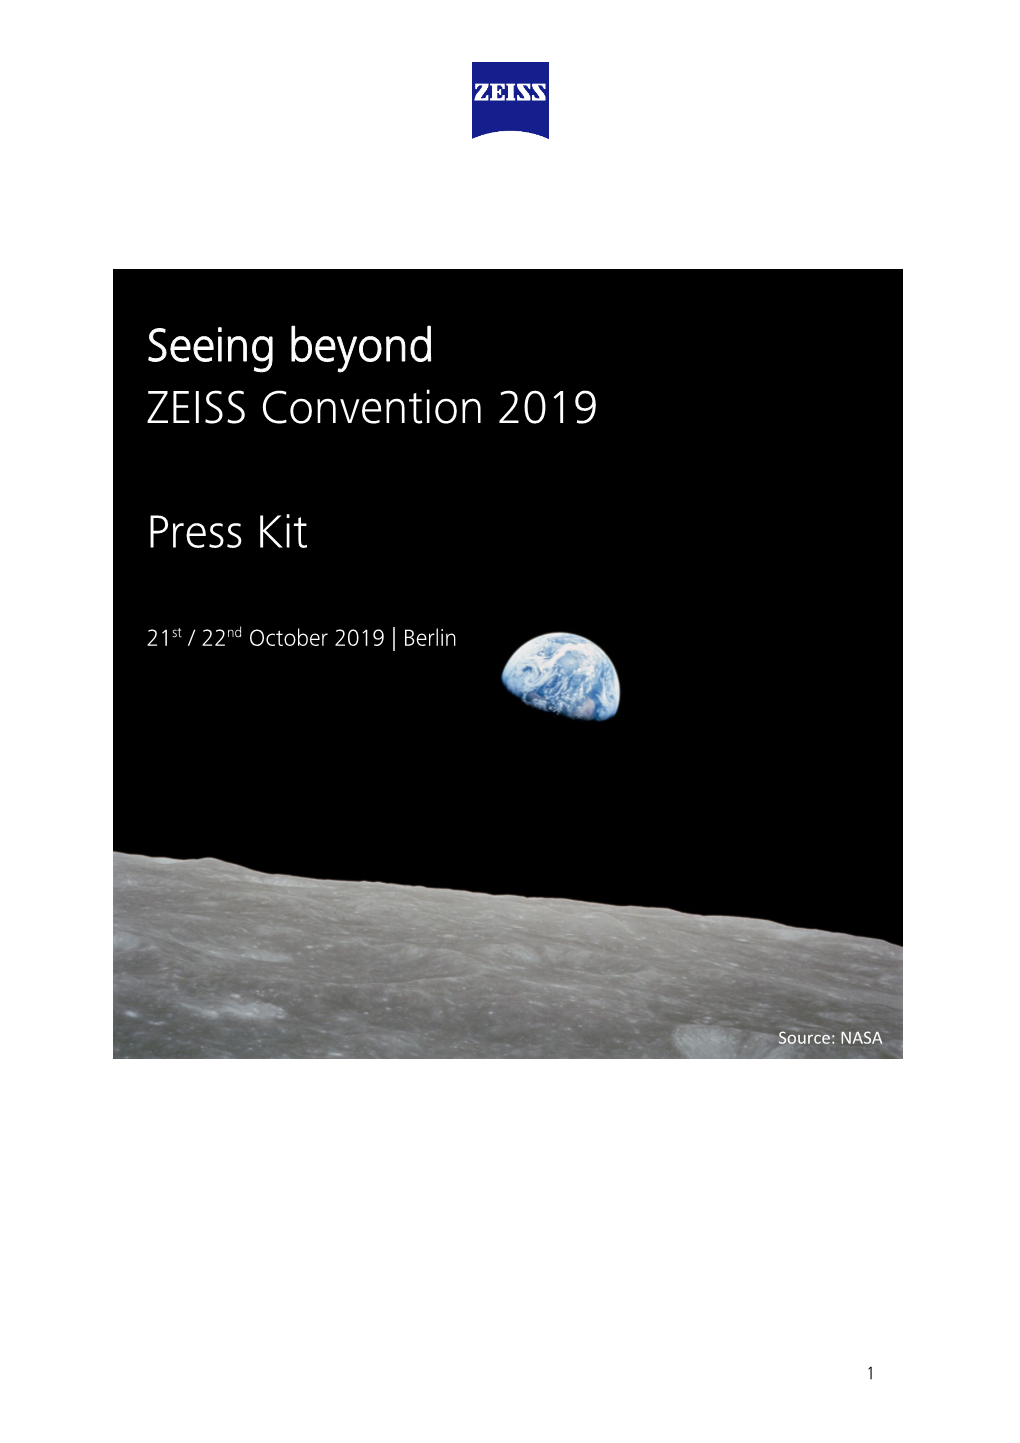 ZEISS Press Kit Berlin